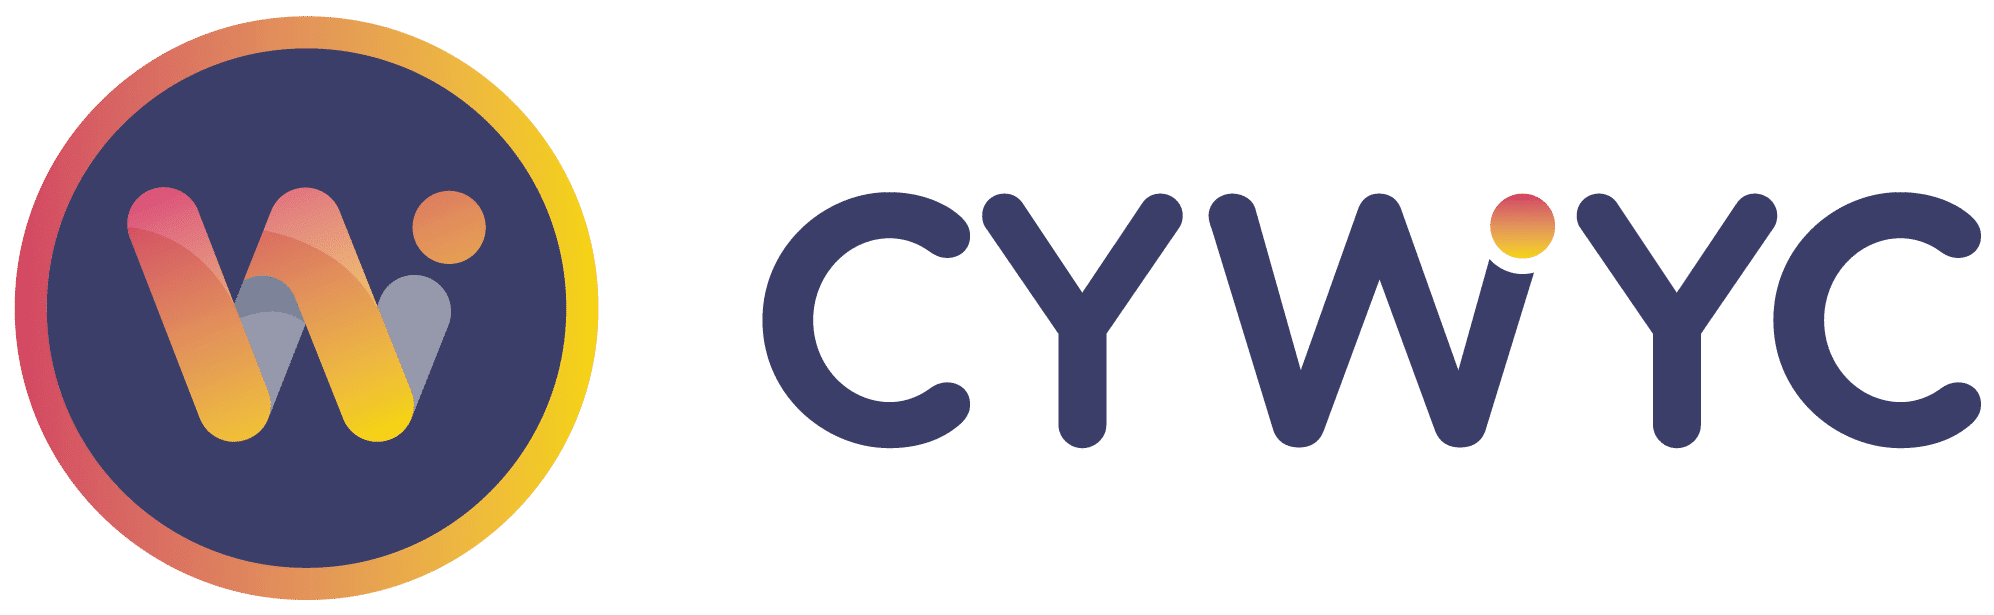 CYWYC logo